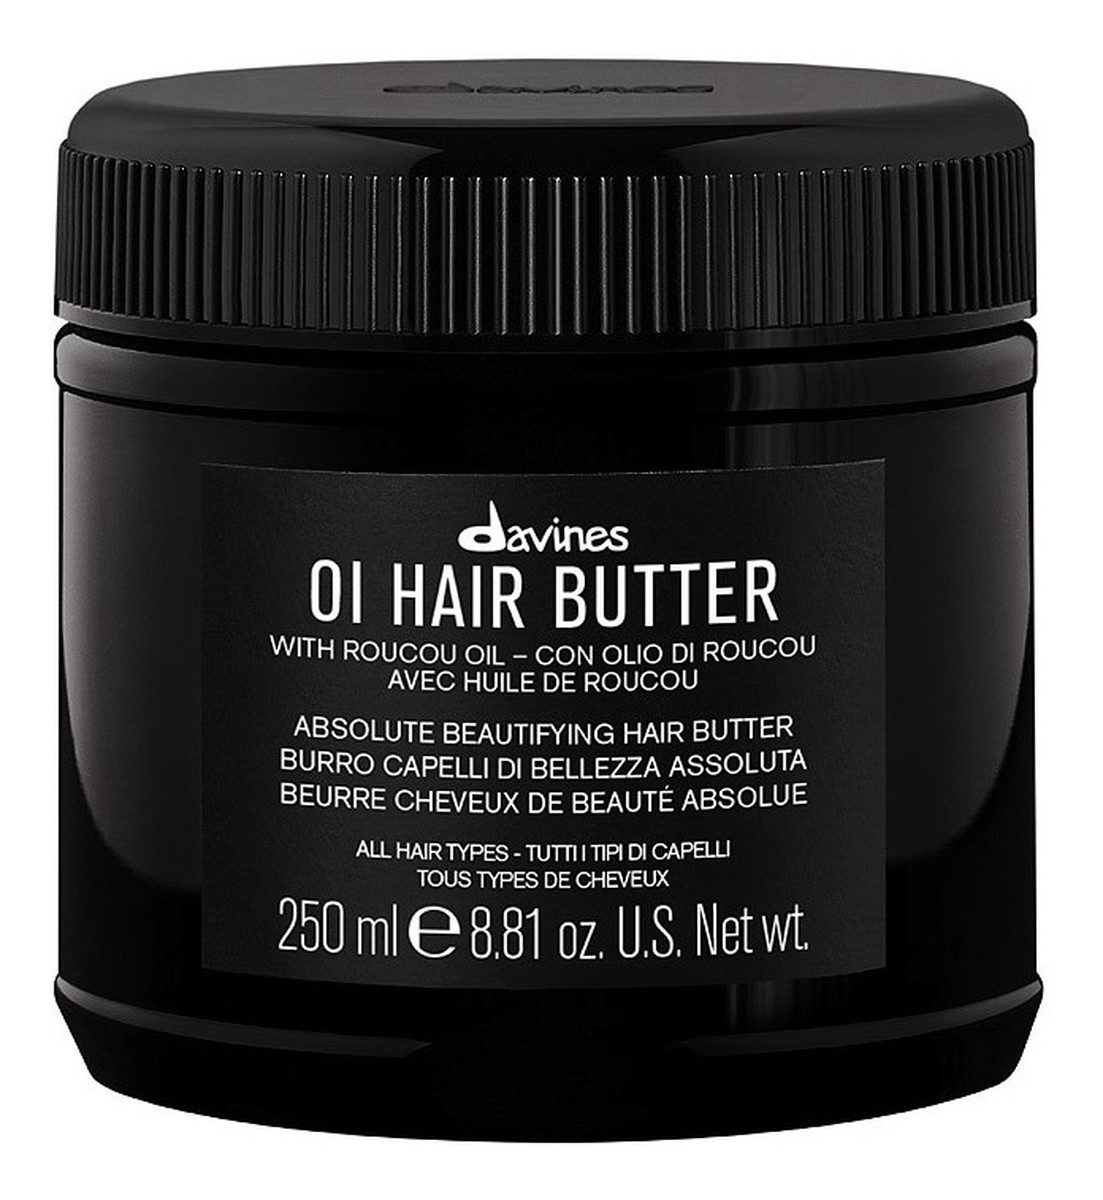 Oi hair butter odżywcze masło do włosów przeciw puszeniu